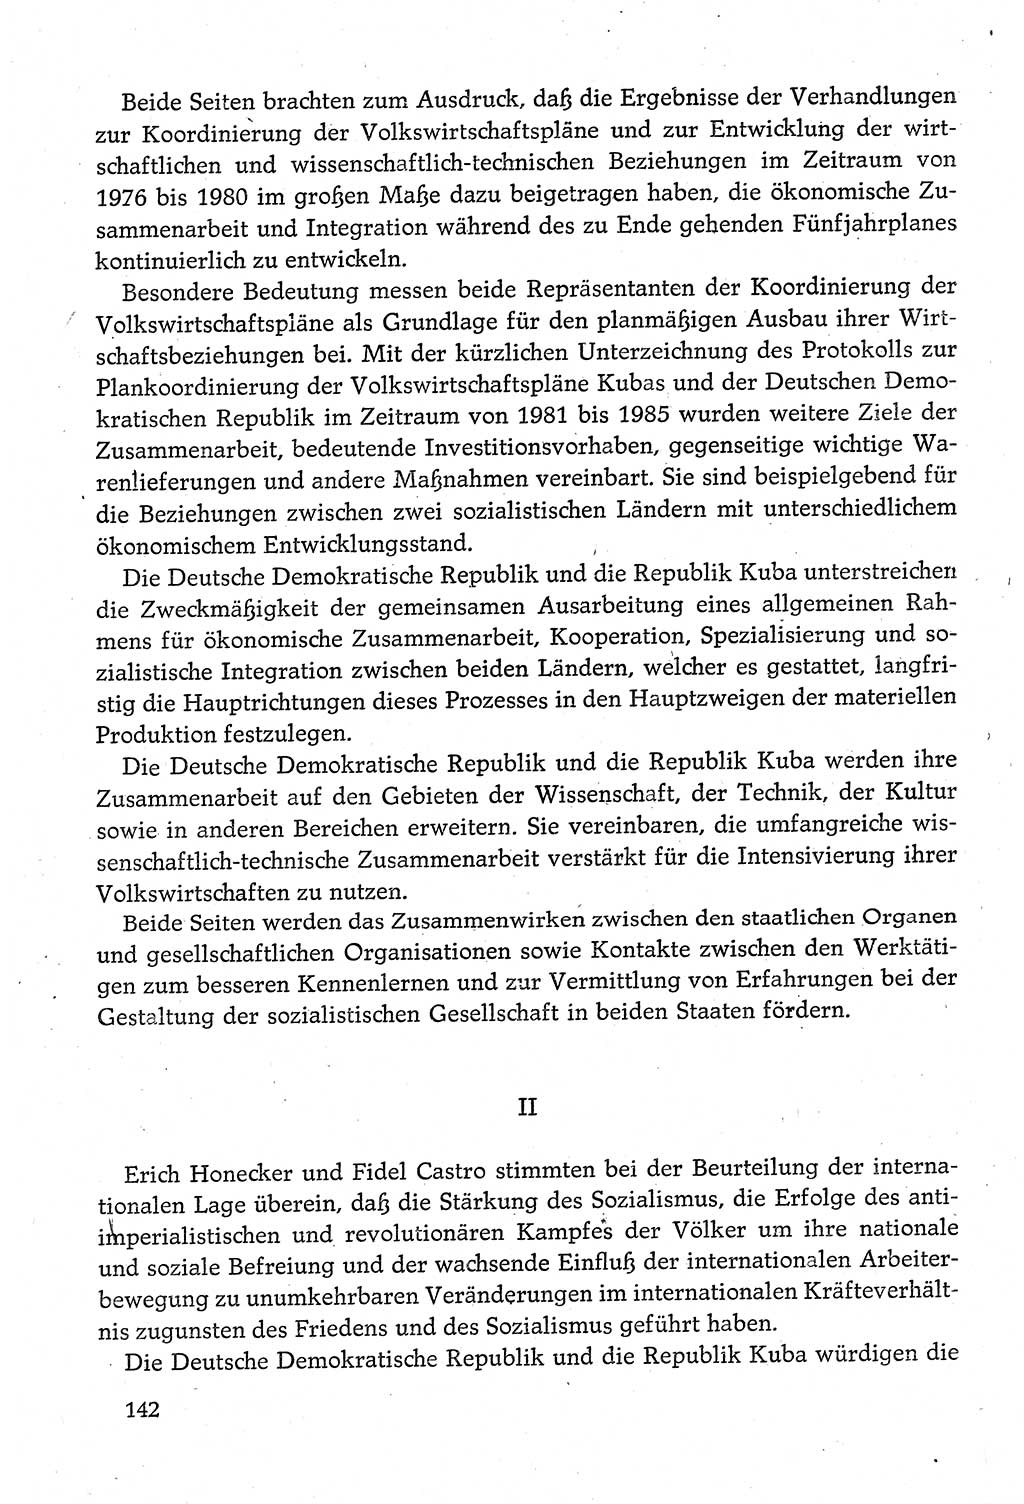 Dokumente der Sozialistischen Einheitspartei Deutschlands (SED) [Deutsche Demokratische Republik (DDR)] 1980-1981, Seite 142 (Dok. SED DDR 1980-1981, S. 142)